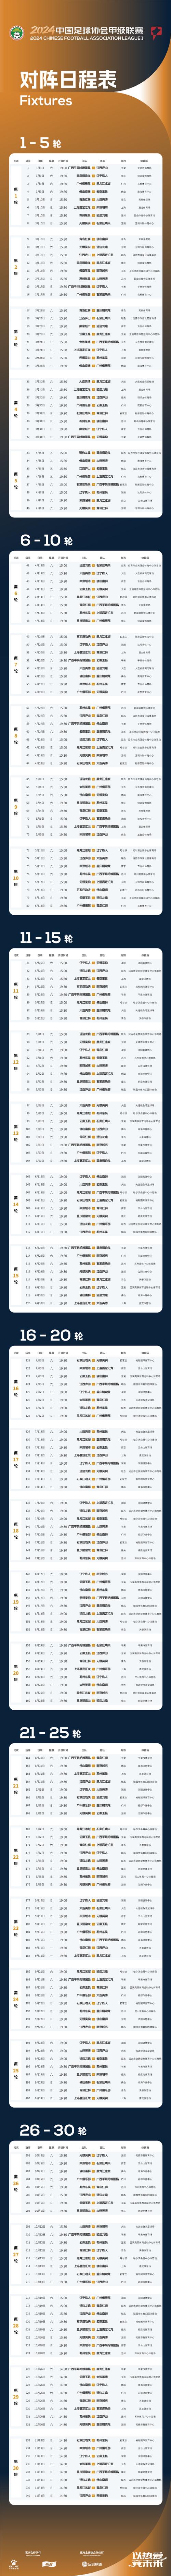 中国足球赛程表